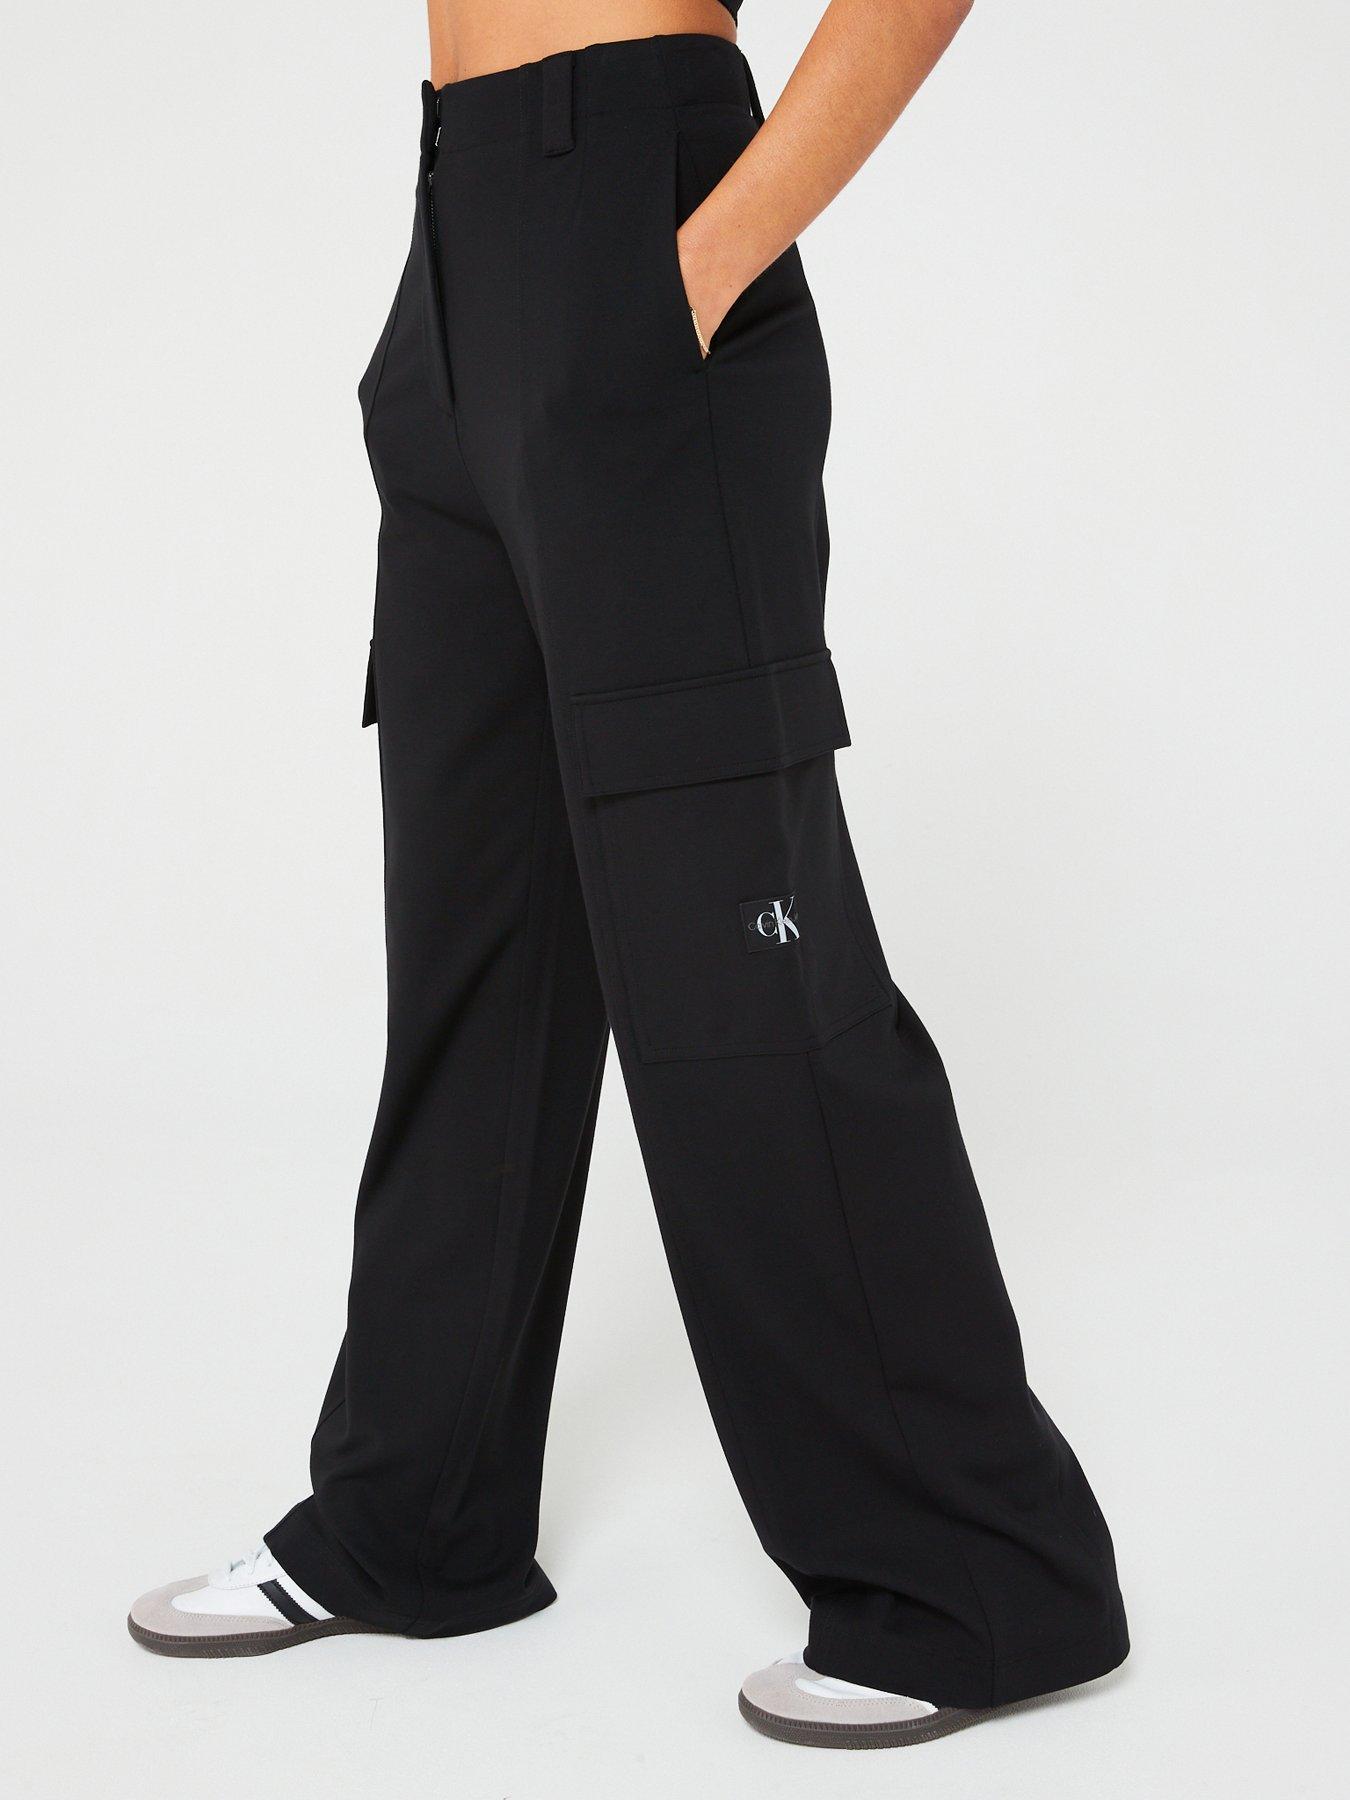 Calvin Klein Slim Fit Logo Joggers Women Size Xs